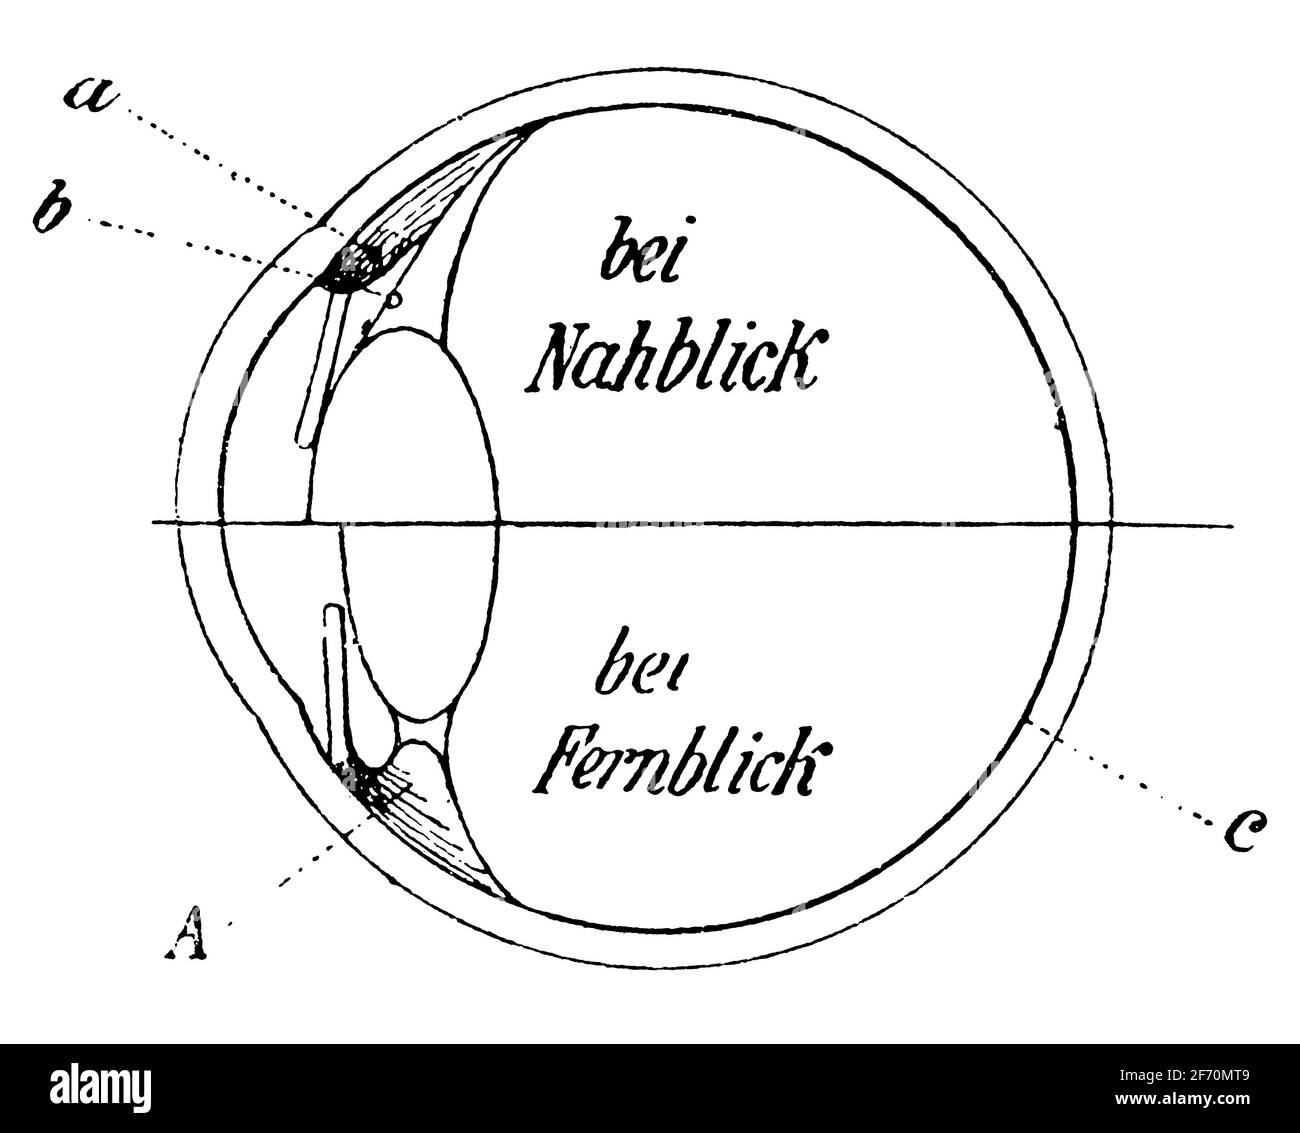 La metà superiore mostra l'occhio durante la sistemazione, la metà inferiore mostra l'occhio a riposo. Illustrazione del 19 ° secolo. Germania. Sfondo bianco. Foto Stock